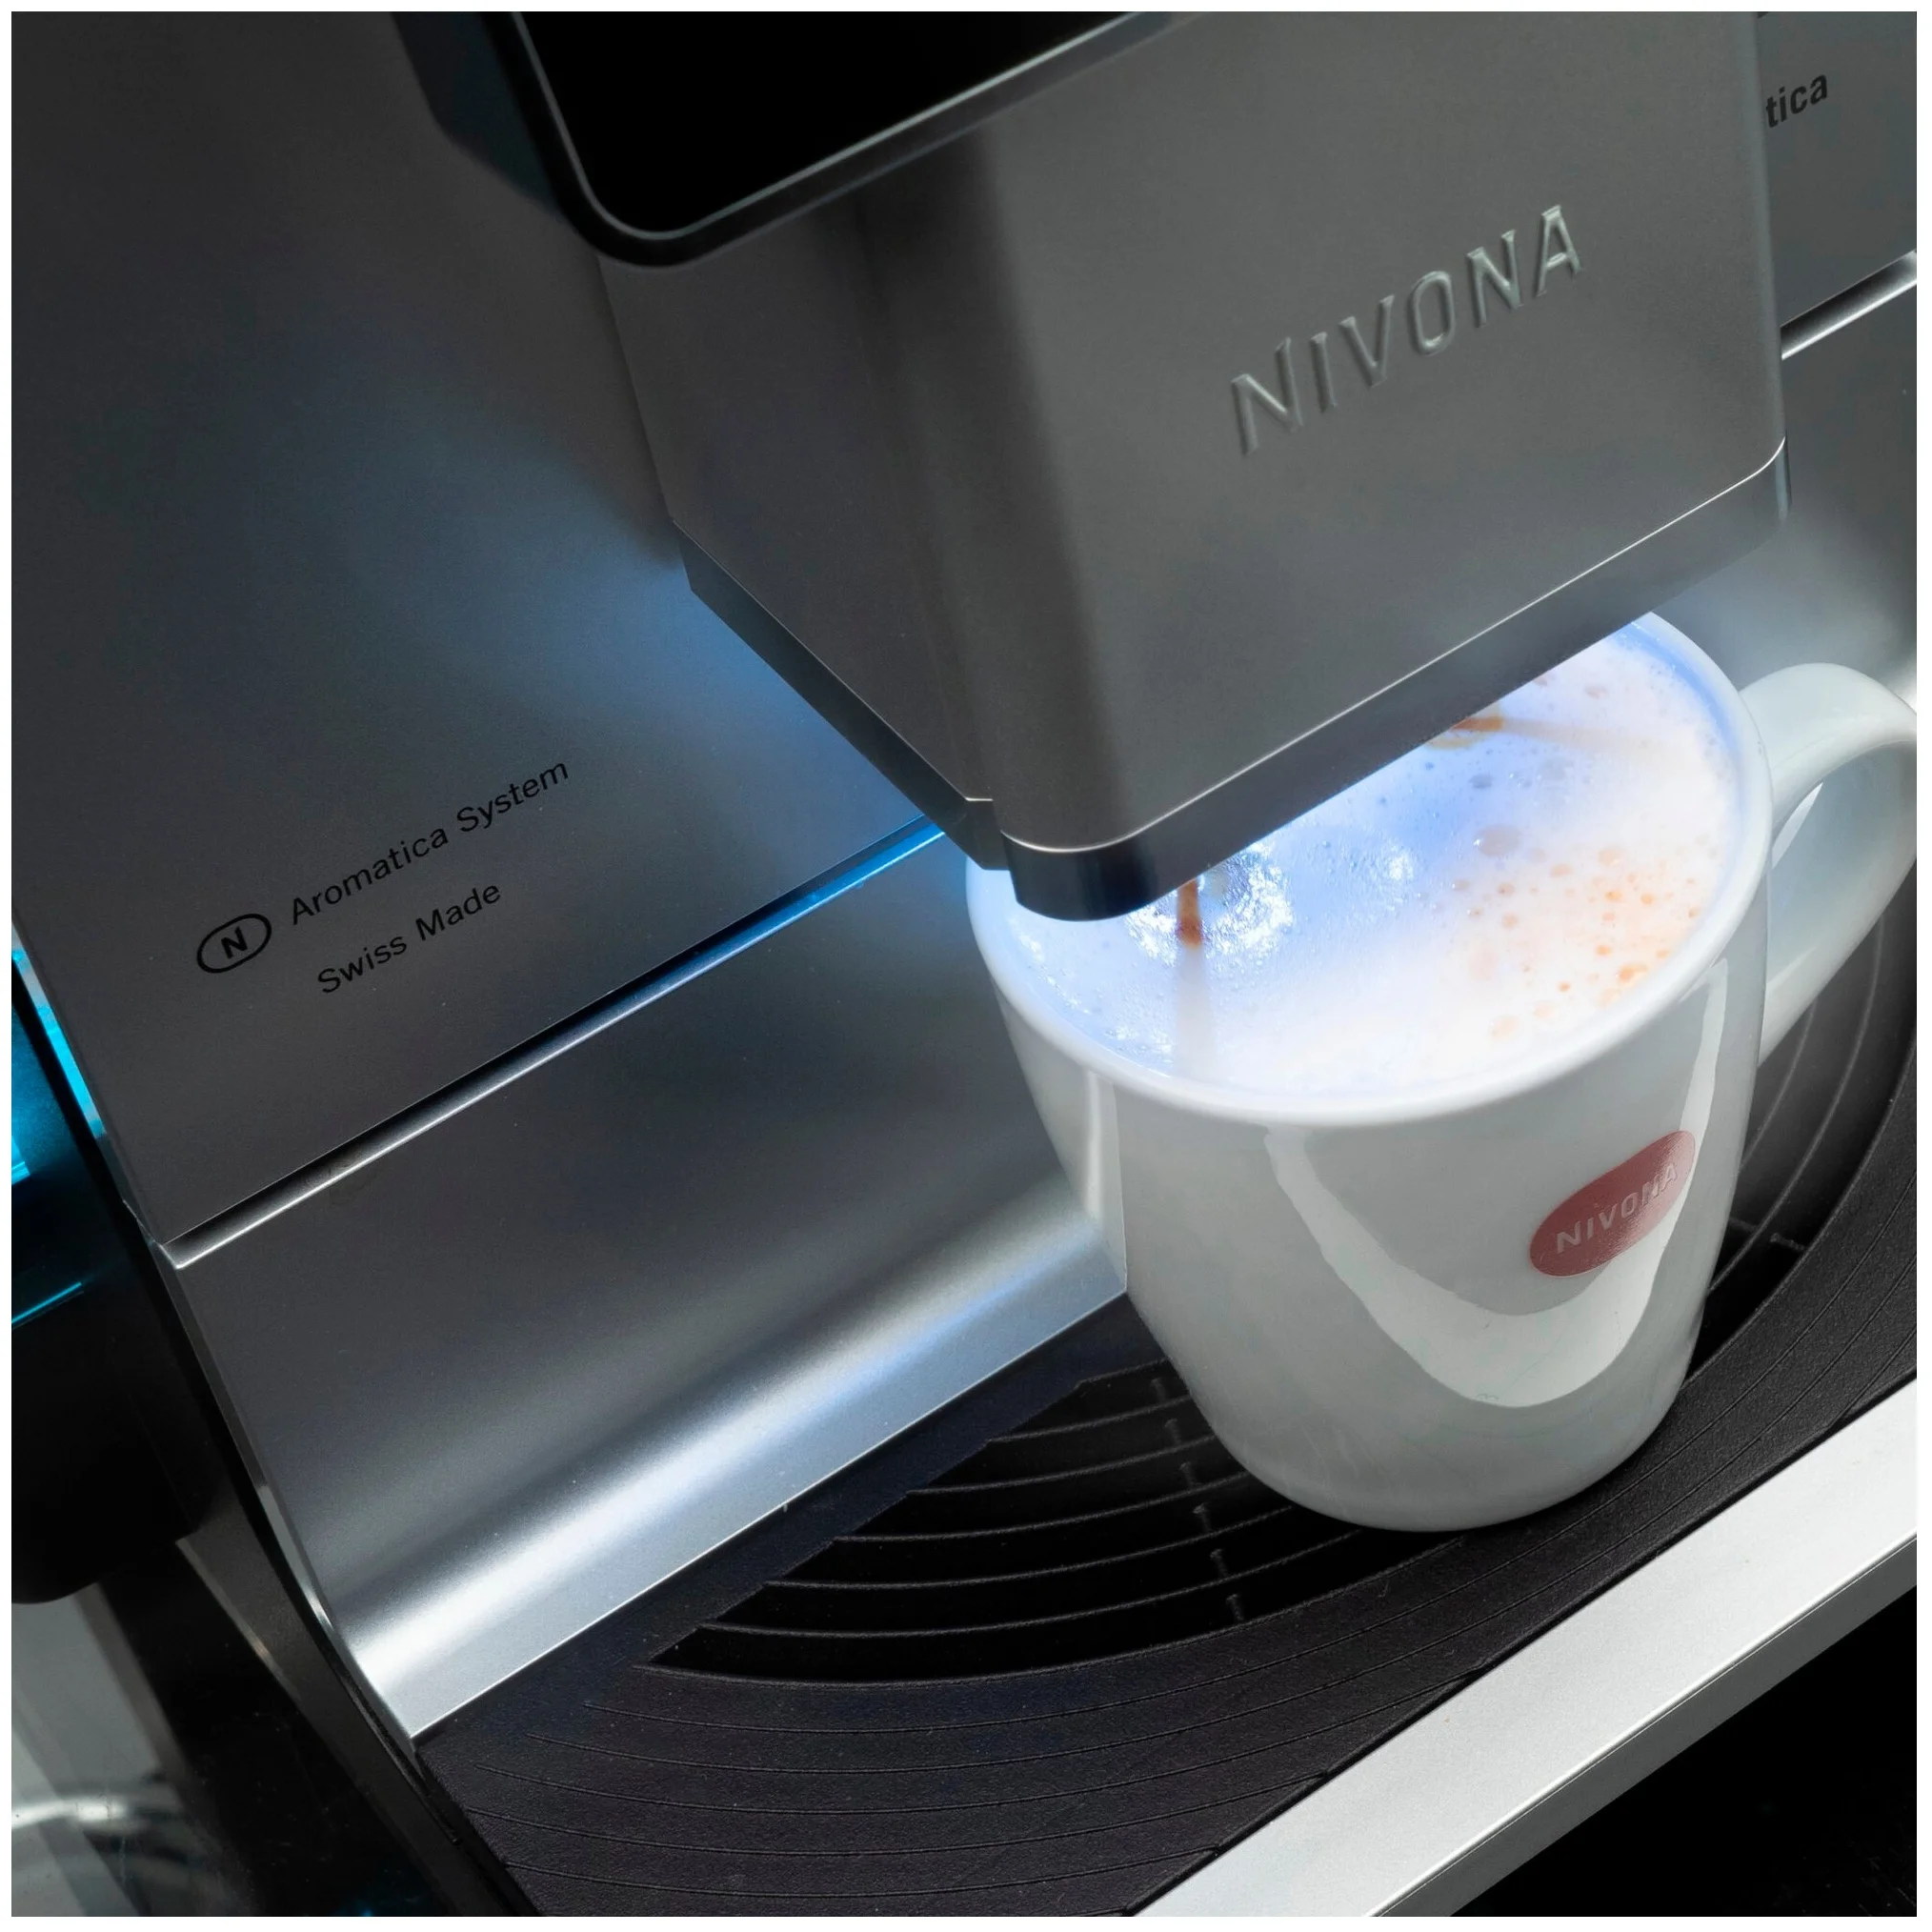 Nivona CafeRomatica 970 - настройки: температура кофе, крепость кофе, объем порции горячей воды, жесткость воды